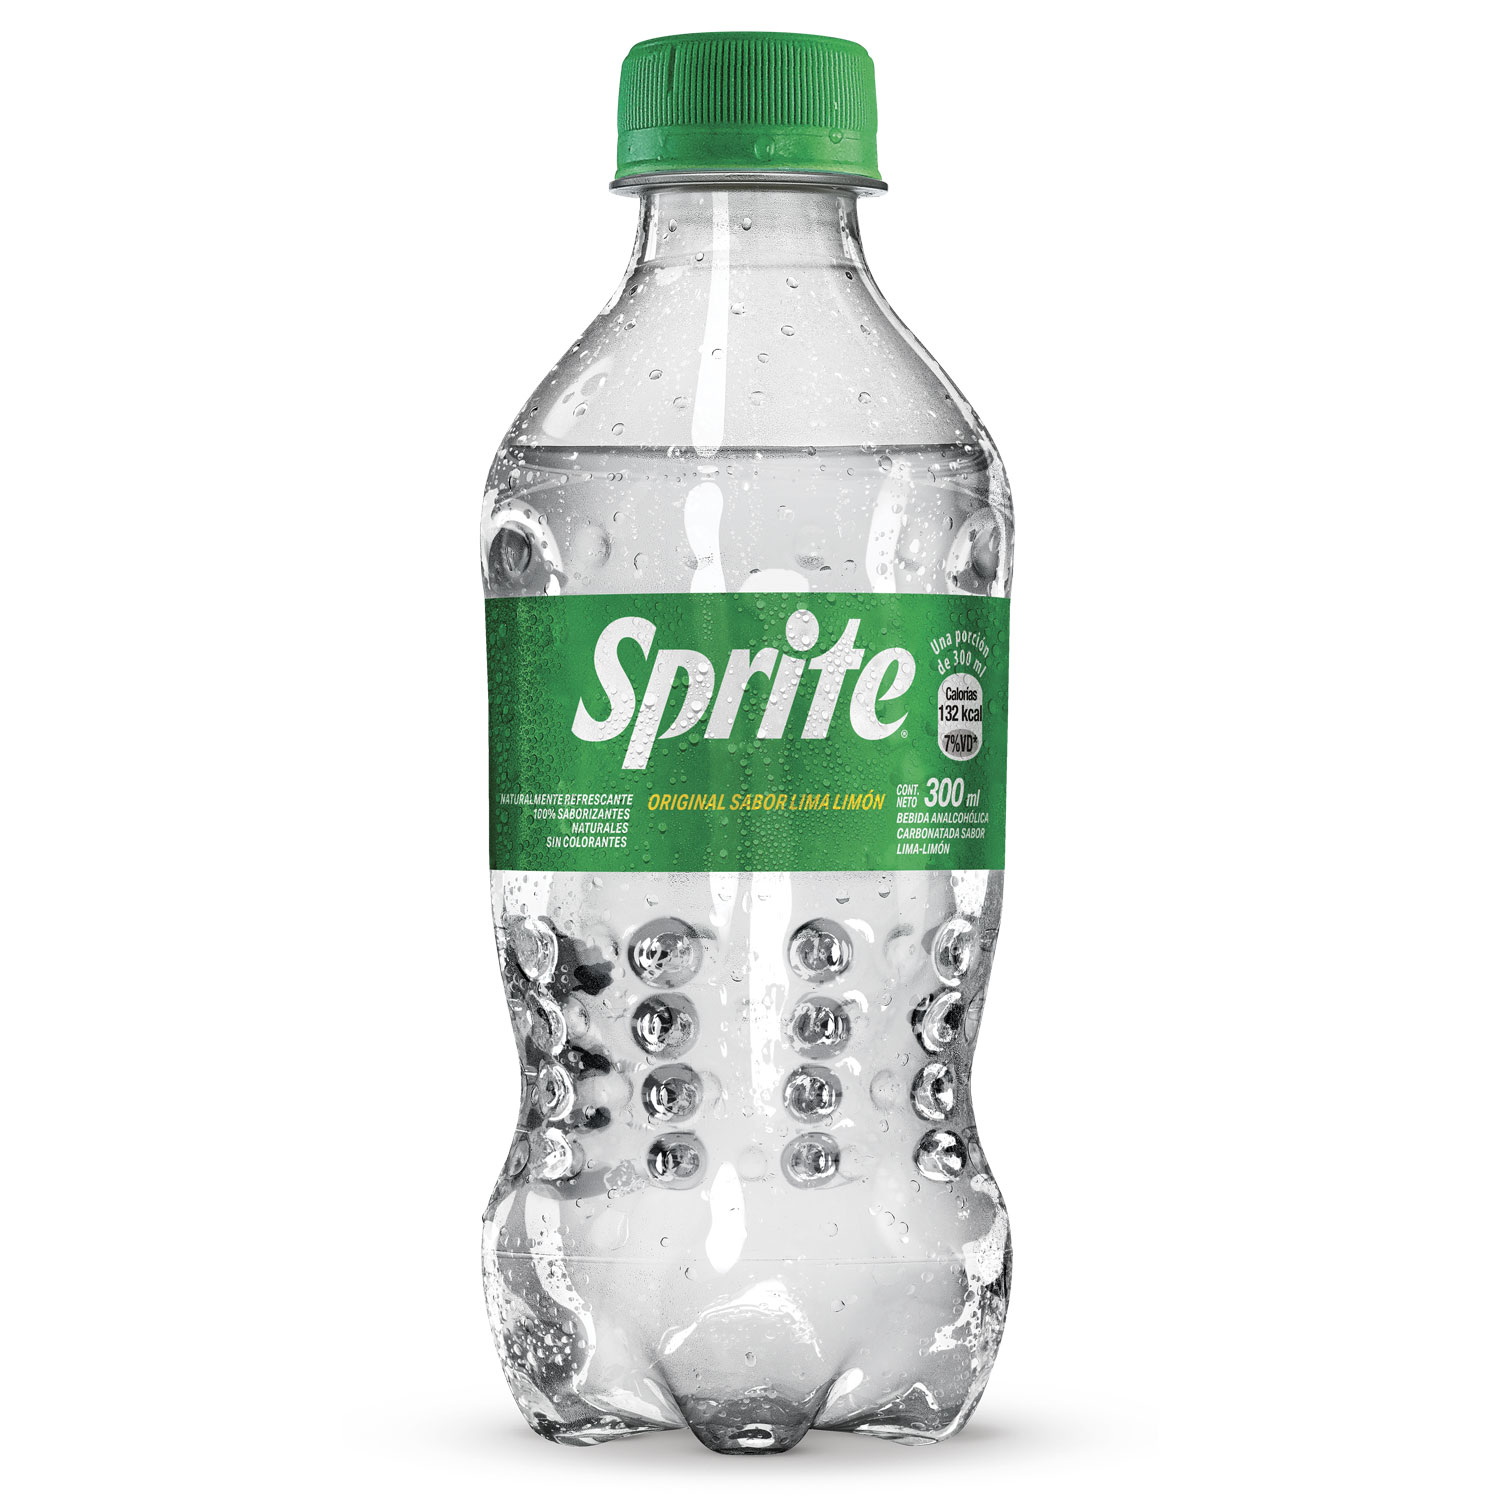 Botella de Sprite Lima Limón 300mL